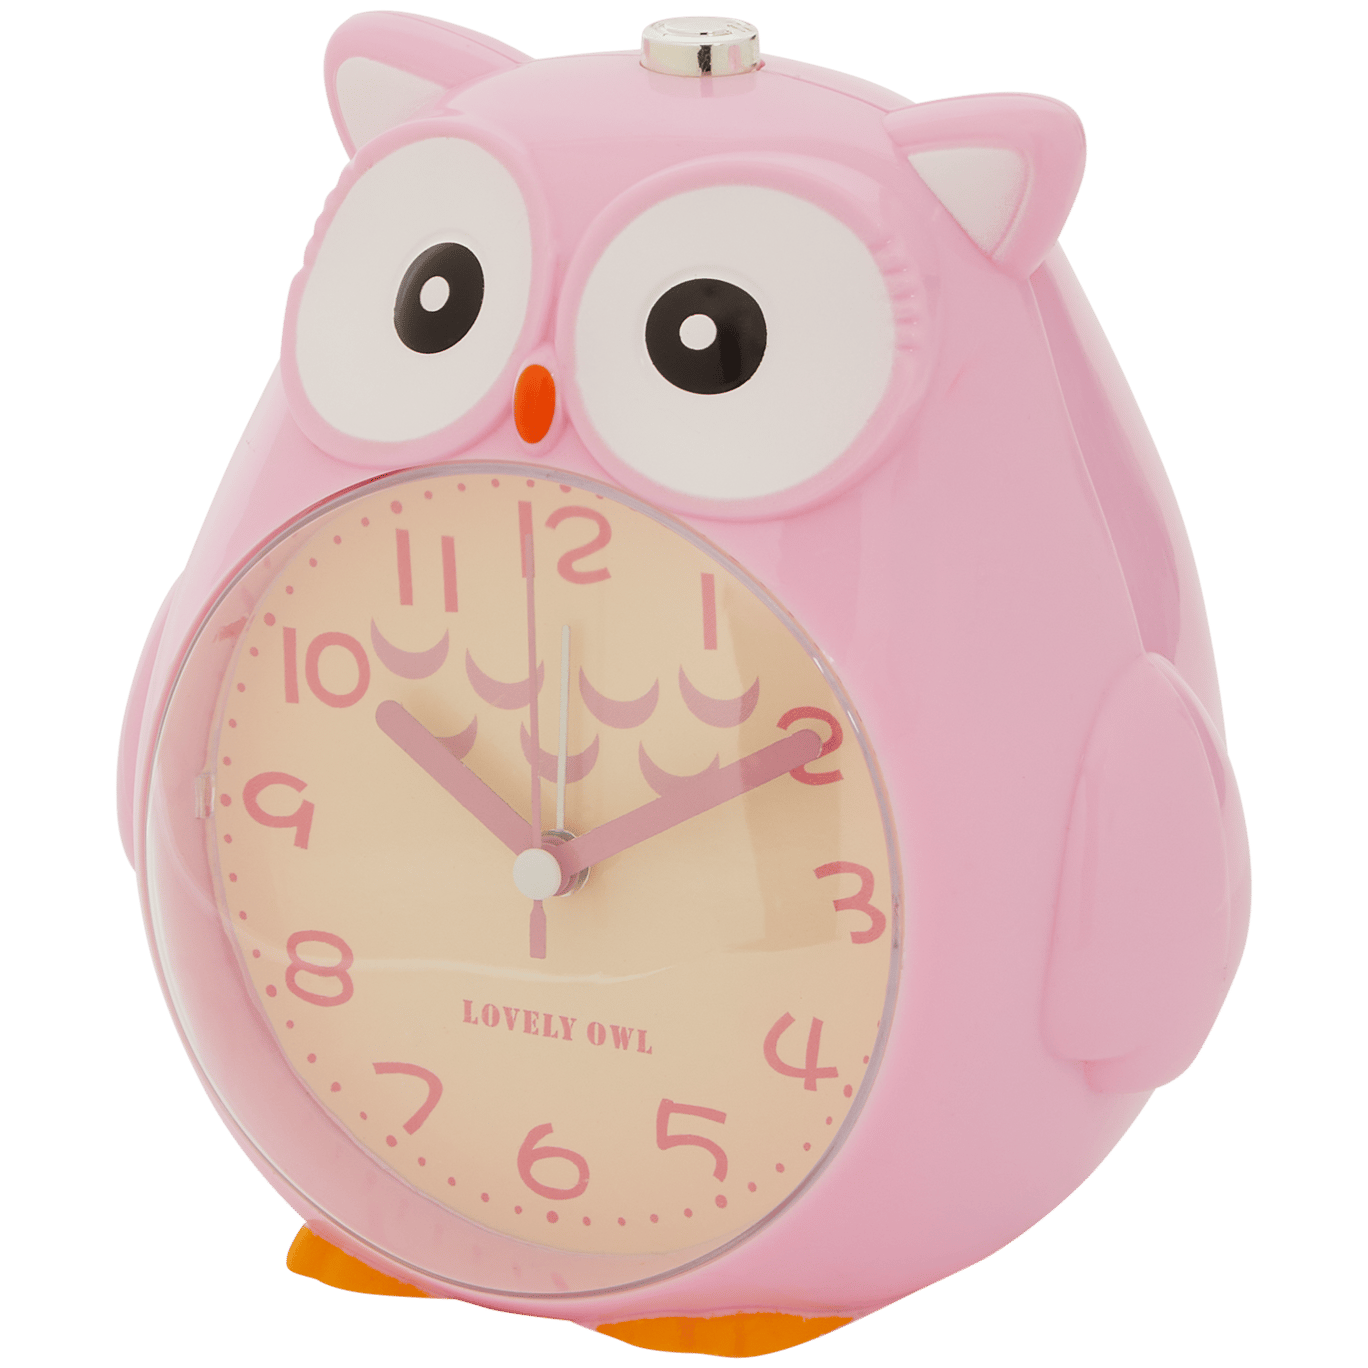 Reloj alarma Animal